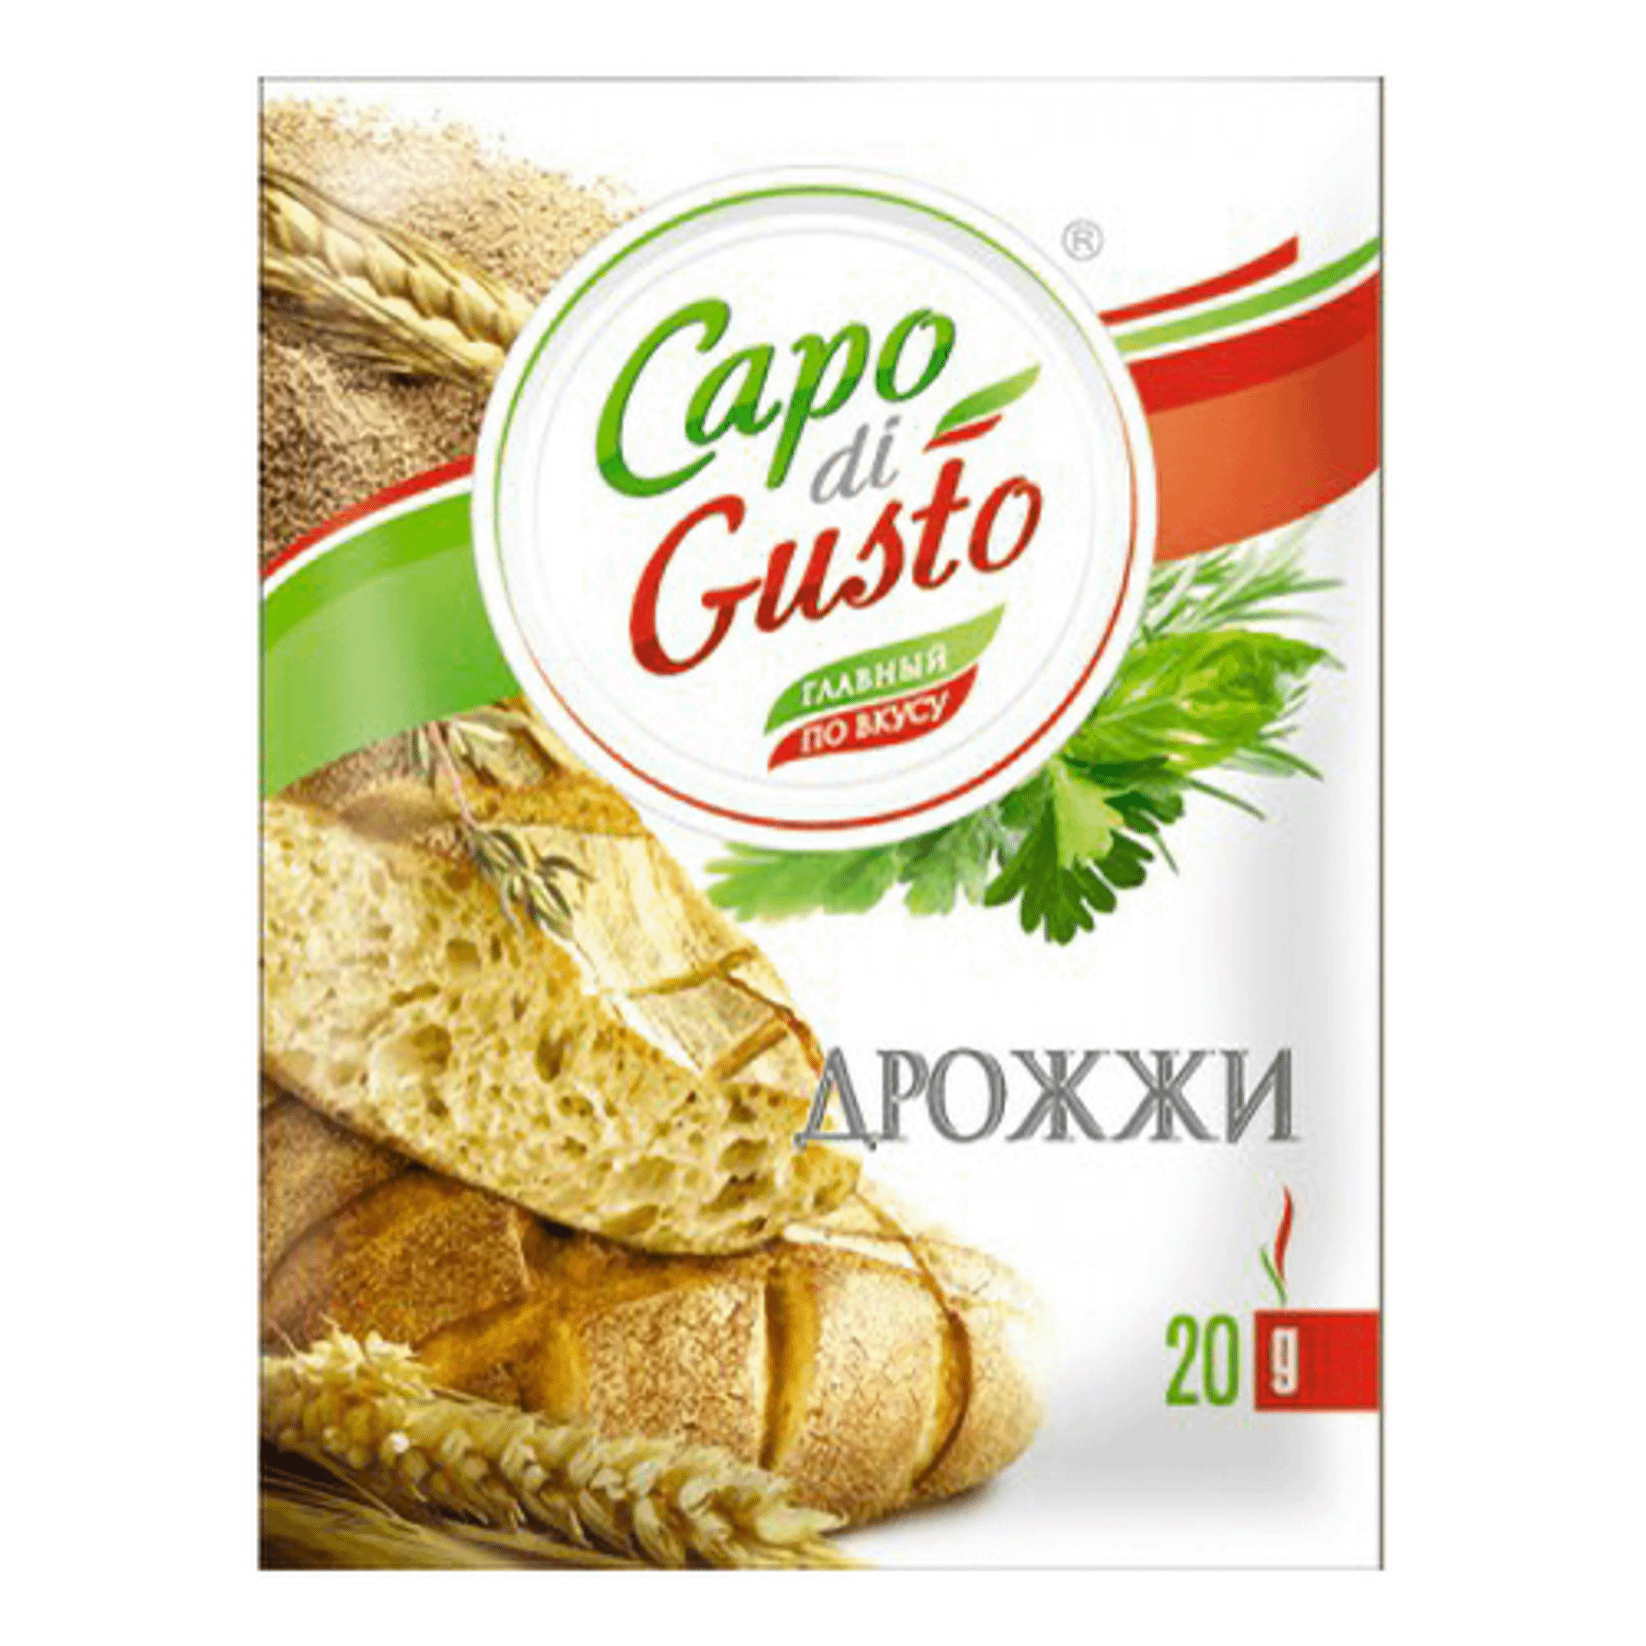 Дрожжи Capo di Gusto быстрорастворимые 20 г дрожжи сухие saf instant хлебопекарные инстантные 125 гр